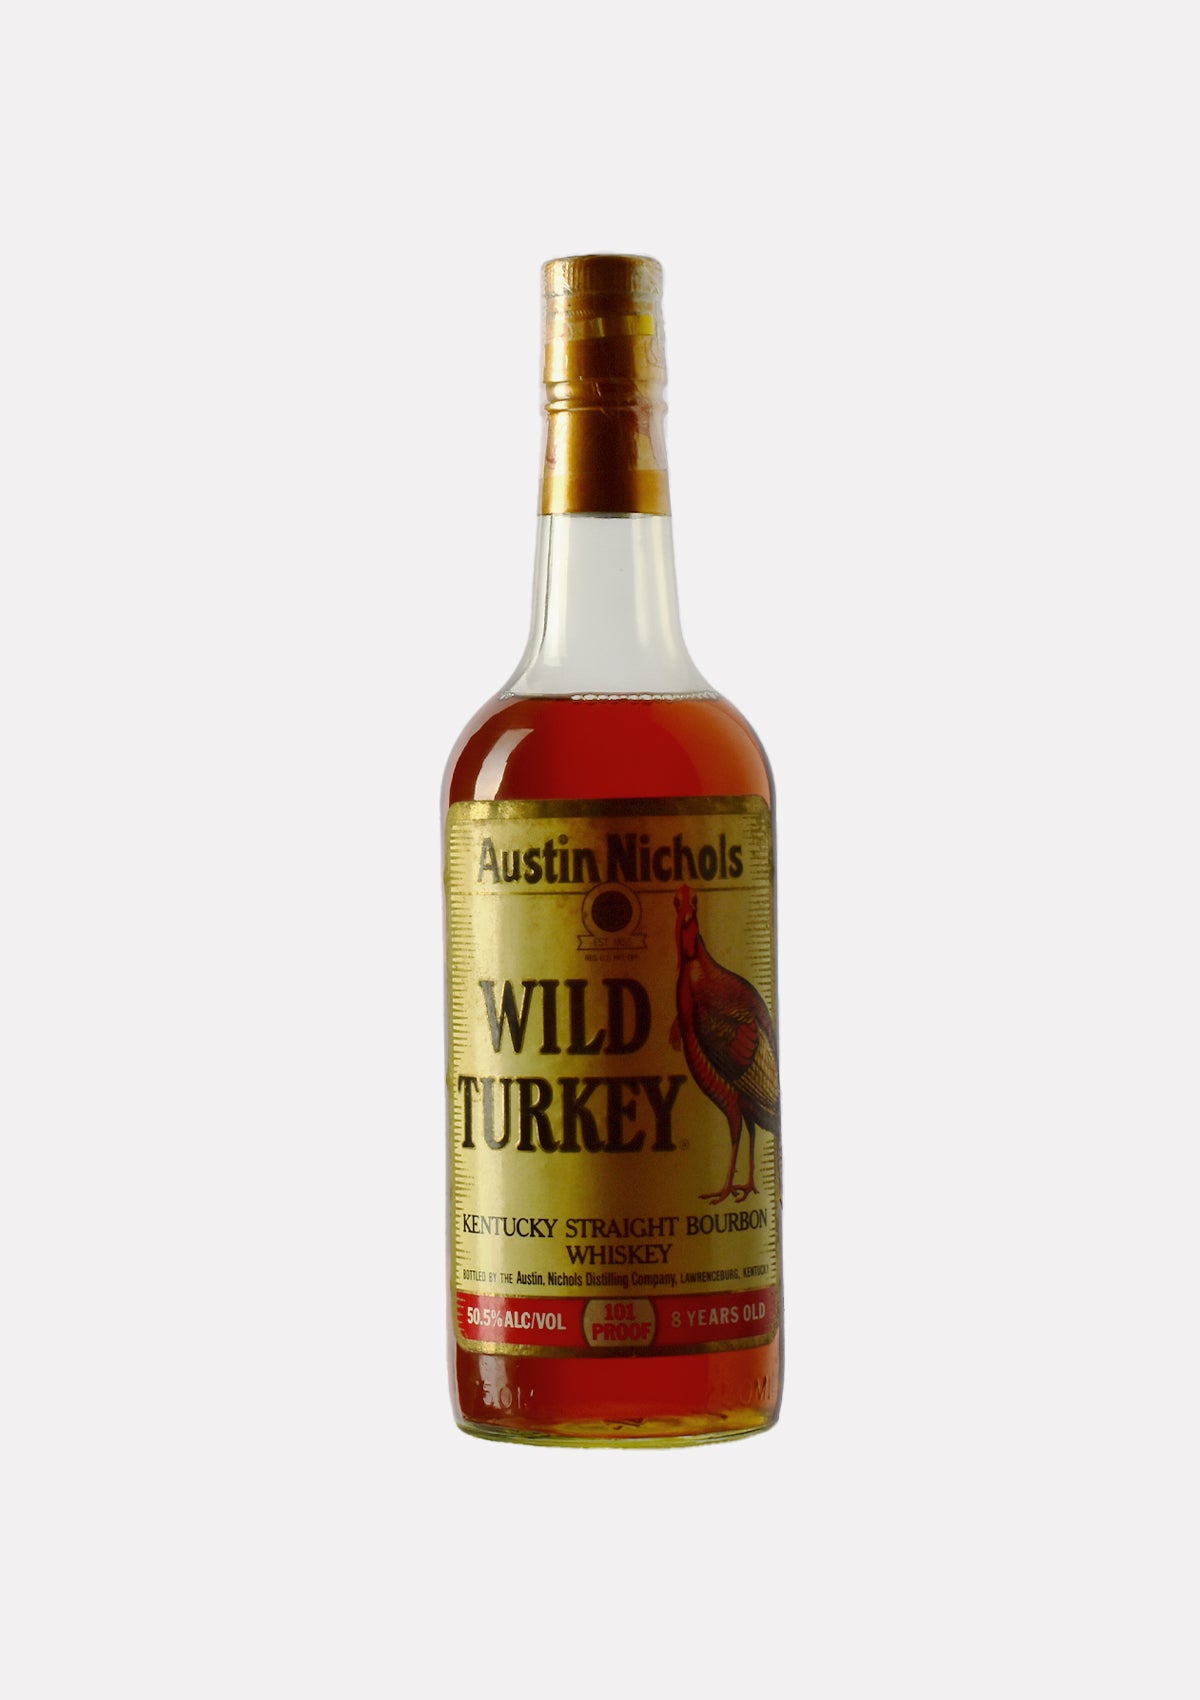 Wild Turkey Kentucky Straight Bourbon Whiskey 101 Proof